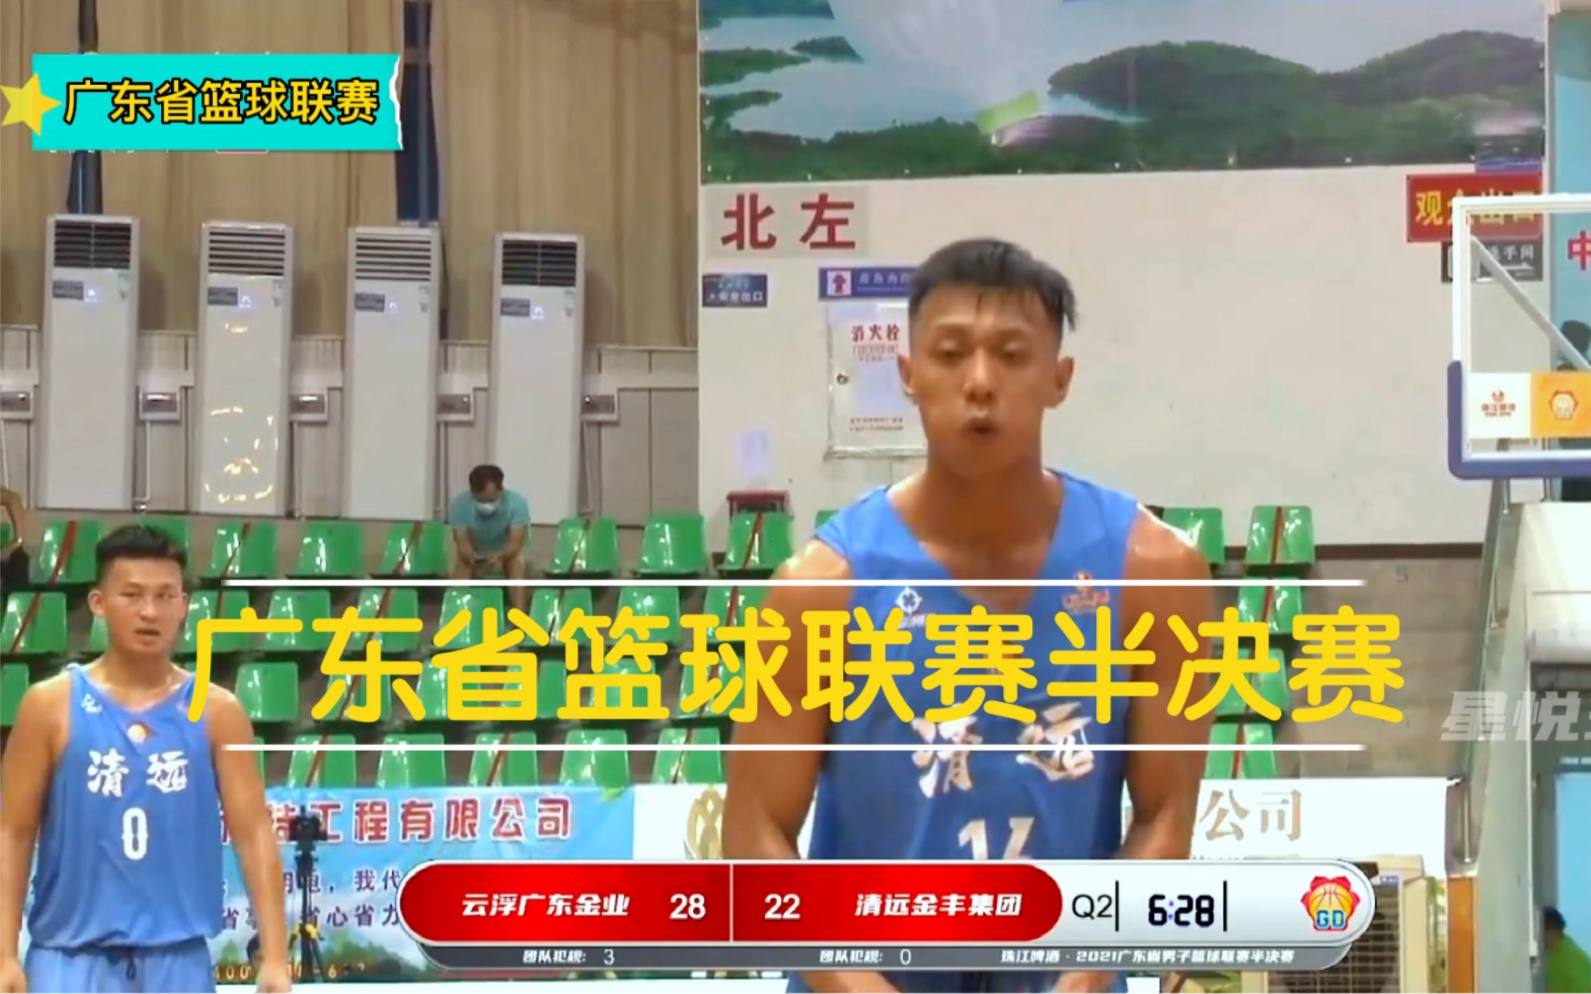 广工第一前锋外号沙溪科比在广东省篮球联赛大发神全场MVP